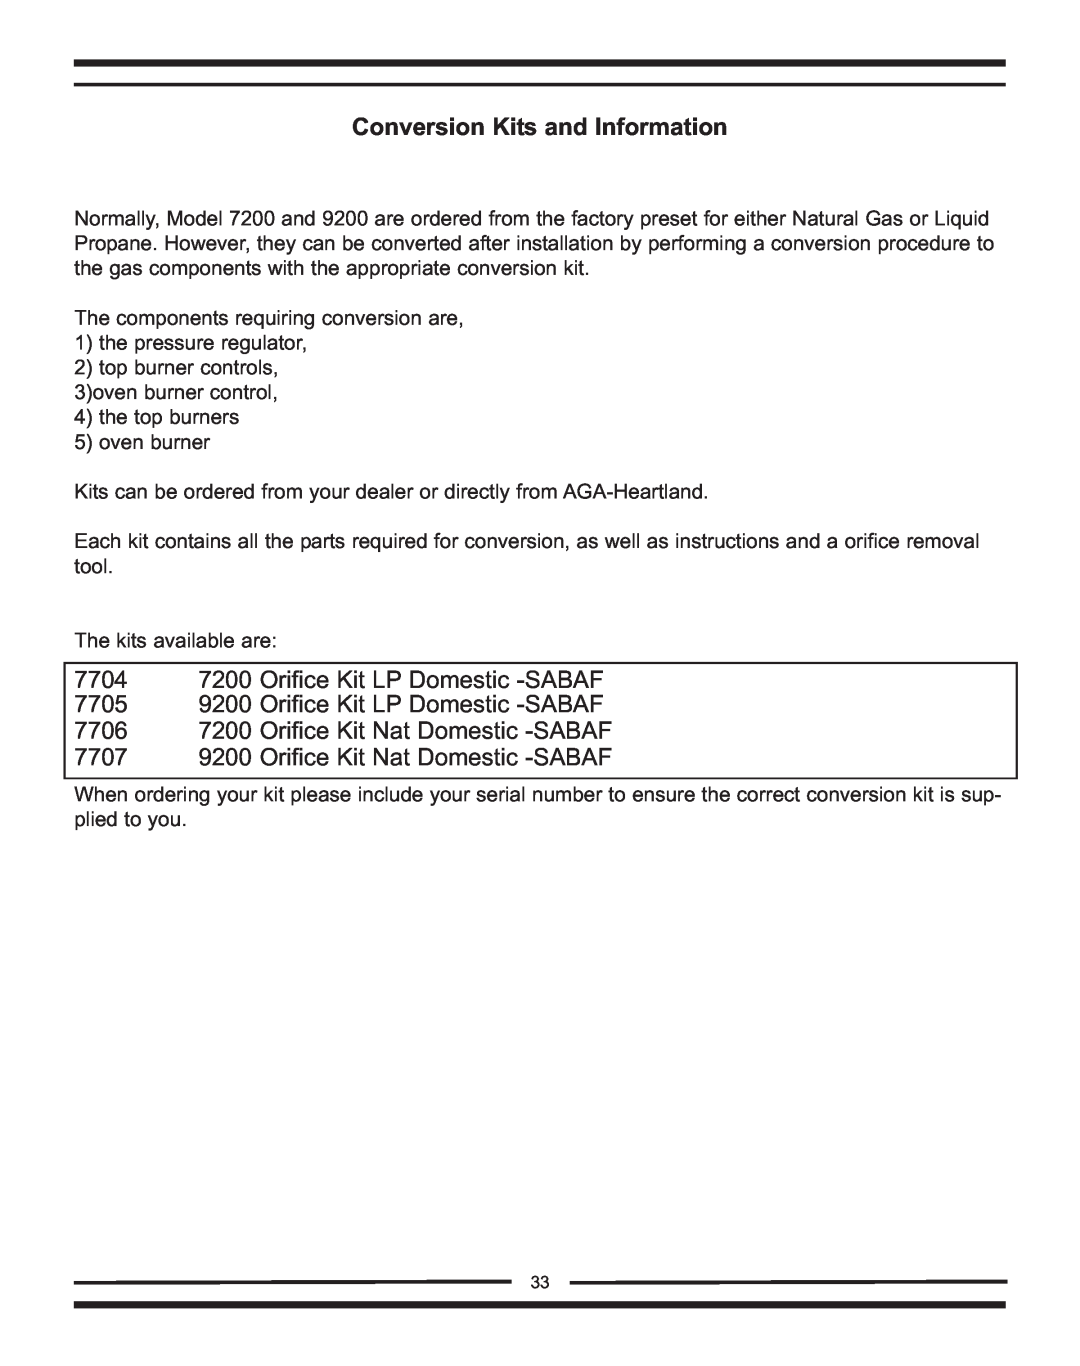 Heartland Bakeware 9200/7200 manual Conversion Kits and Information, 7704 7200 Orifice Kit LP Domestic -SABAF 